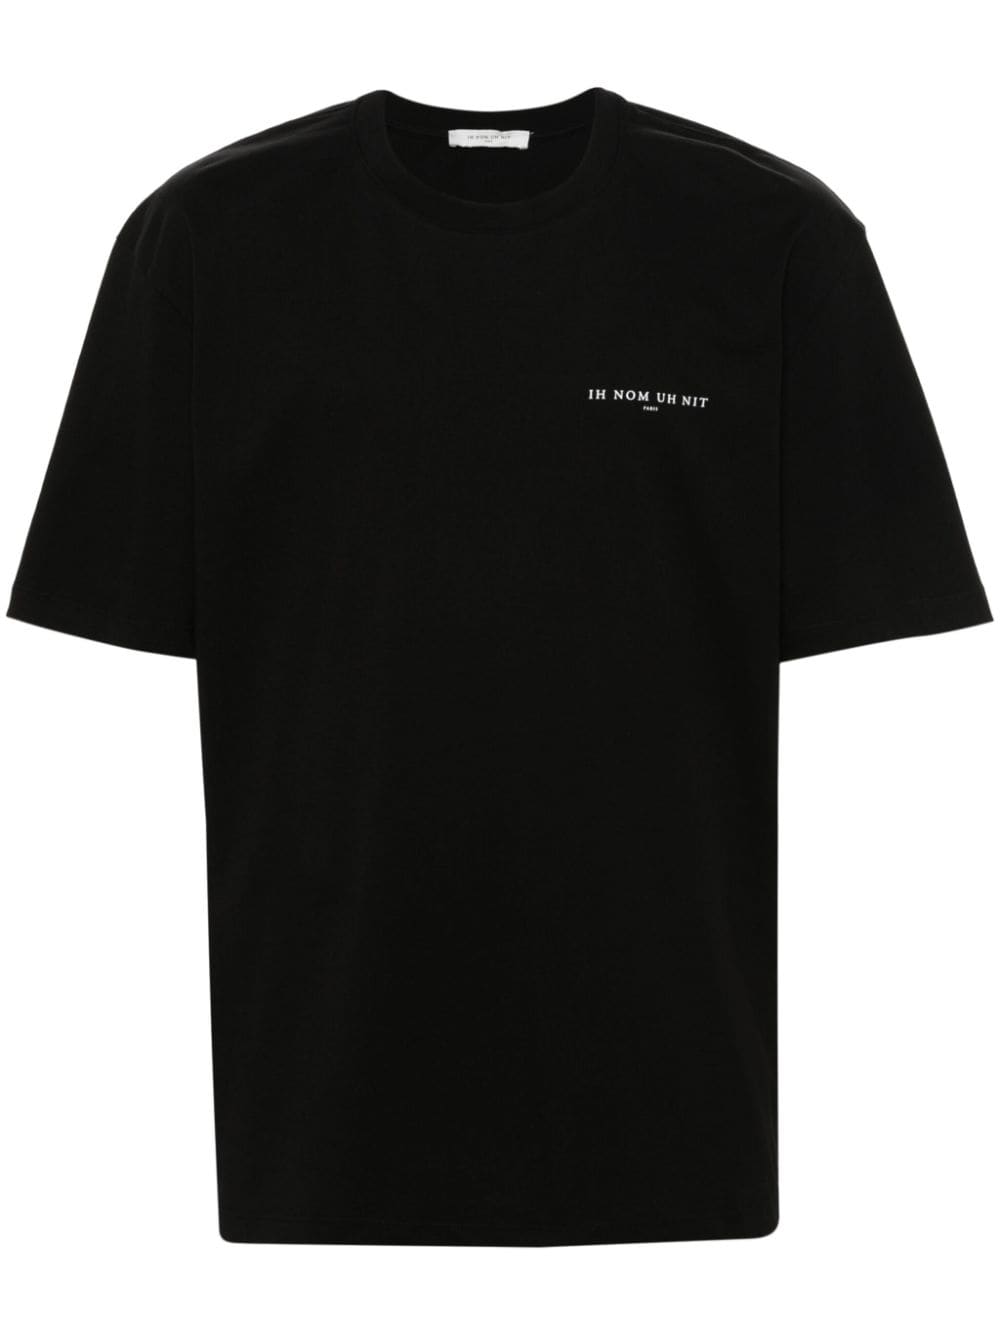 T-shirt noir avec écriture logo